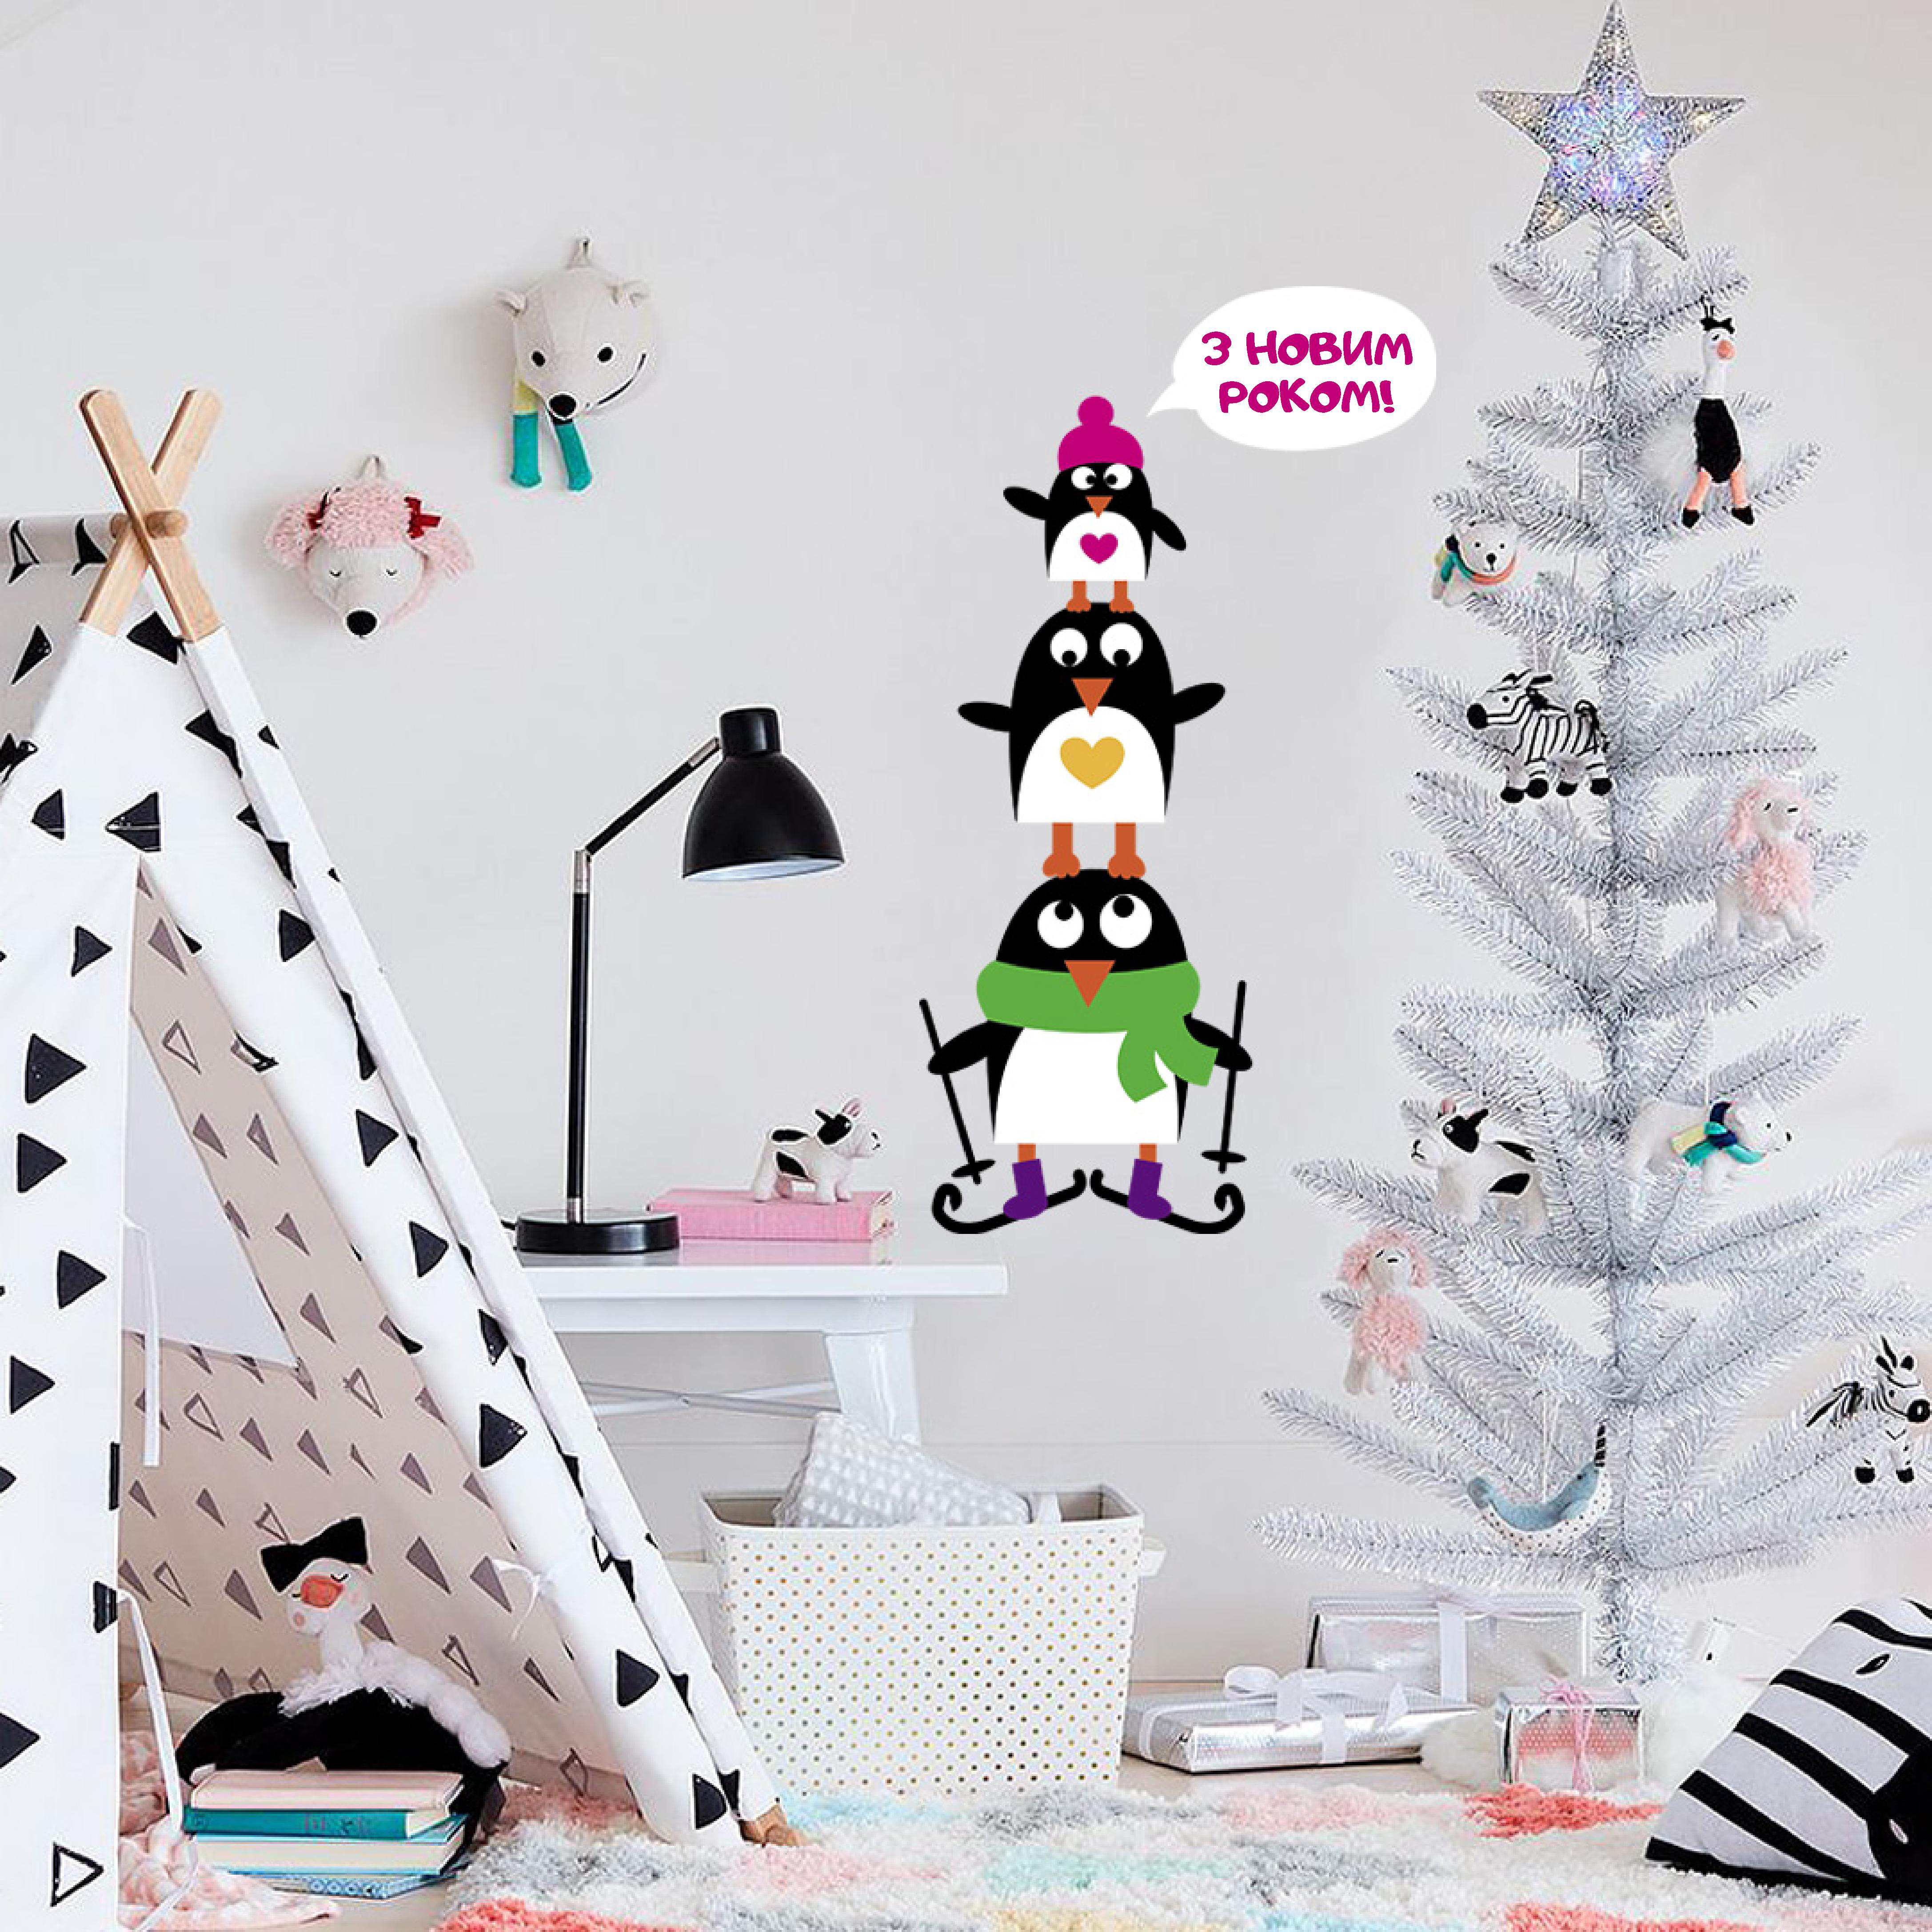 наклейка пінгвіни фото, новорічні пінгвіни фото, новорічні наклейки фото, новорічний декор фото